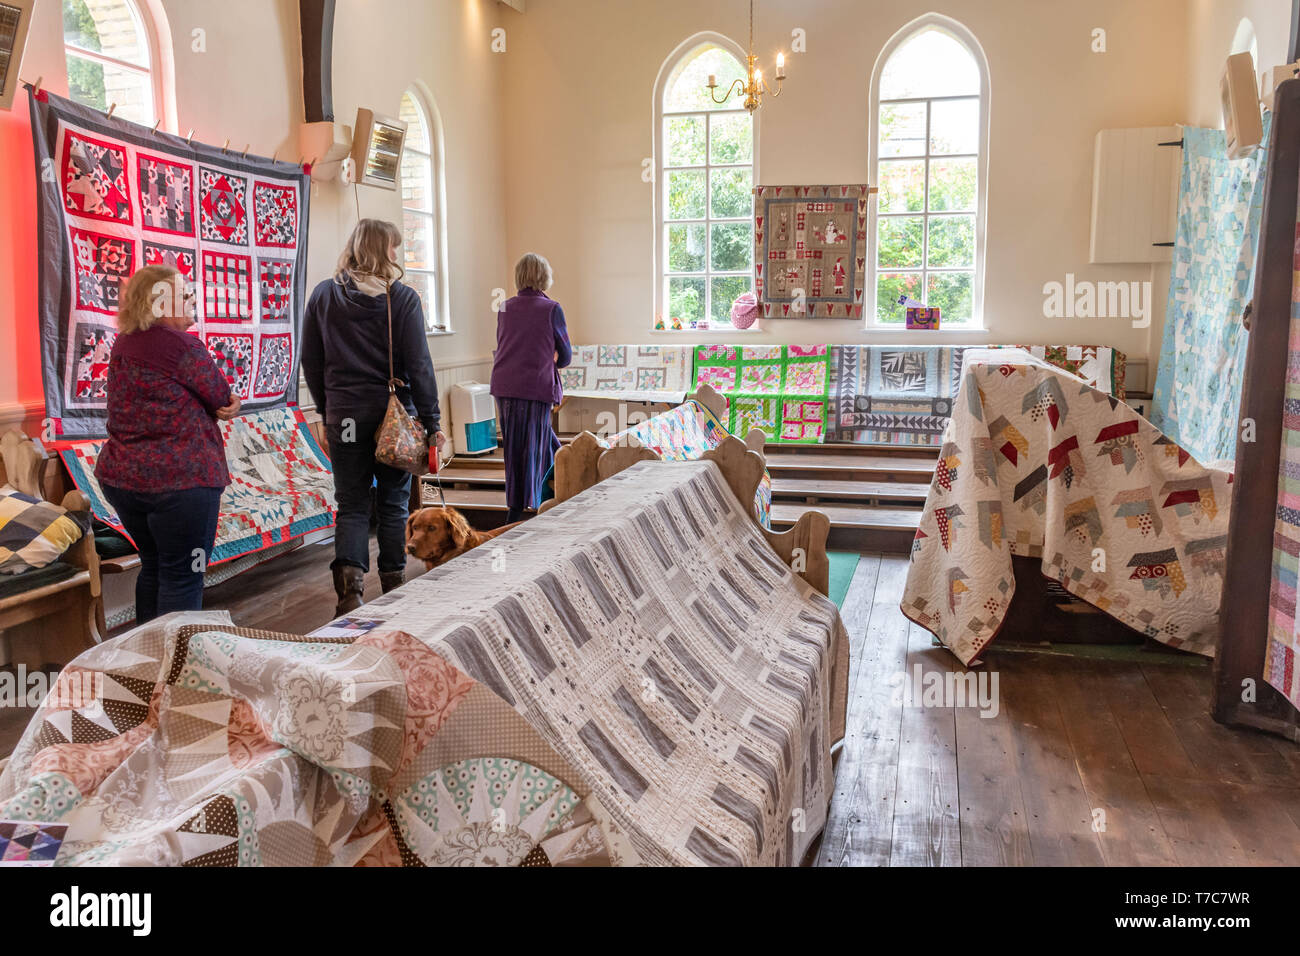 Des quilts exposés dans un village hall à l'Oakhanger peut Fayre dans le Hampshire, au Royaume-Uni. Exposition d'artisanat, de couture et de travaux, de l'artisanat. Banque D'Images